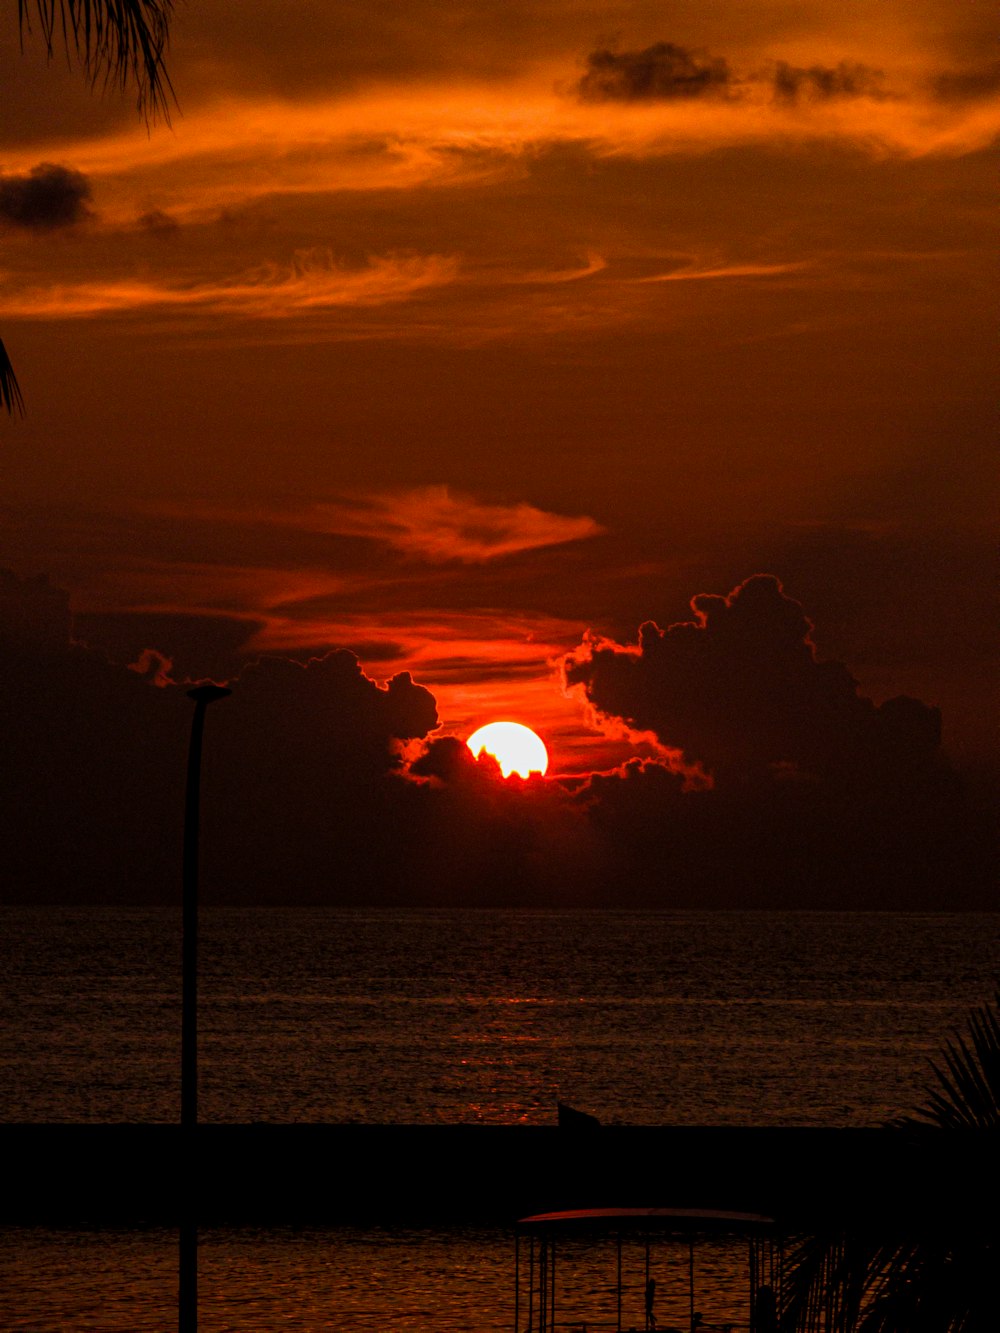 Il sole sta tramontando sull'oceano con una barca in primo piano